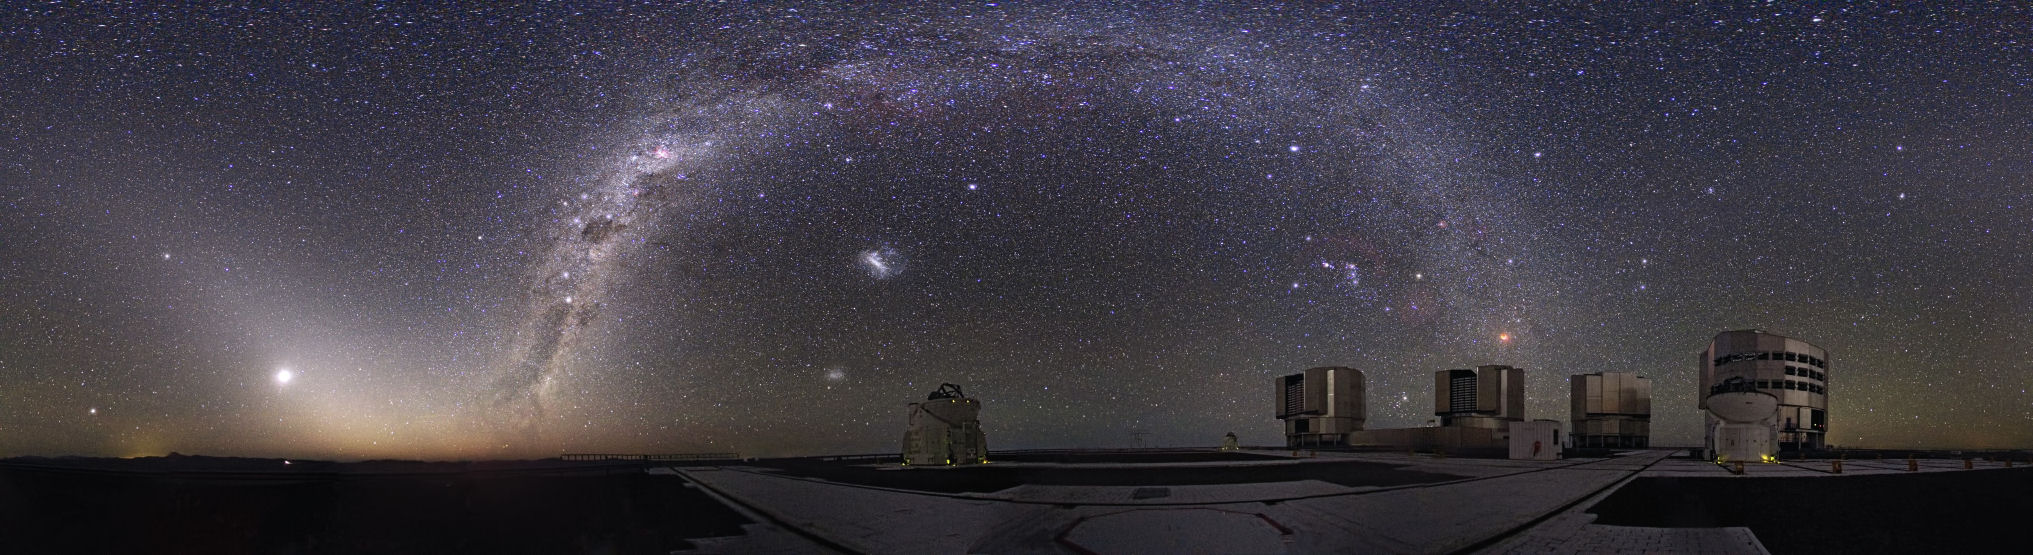 Paranal Observatory частью которой является телескоп VISTA